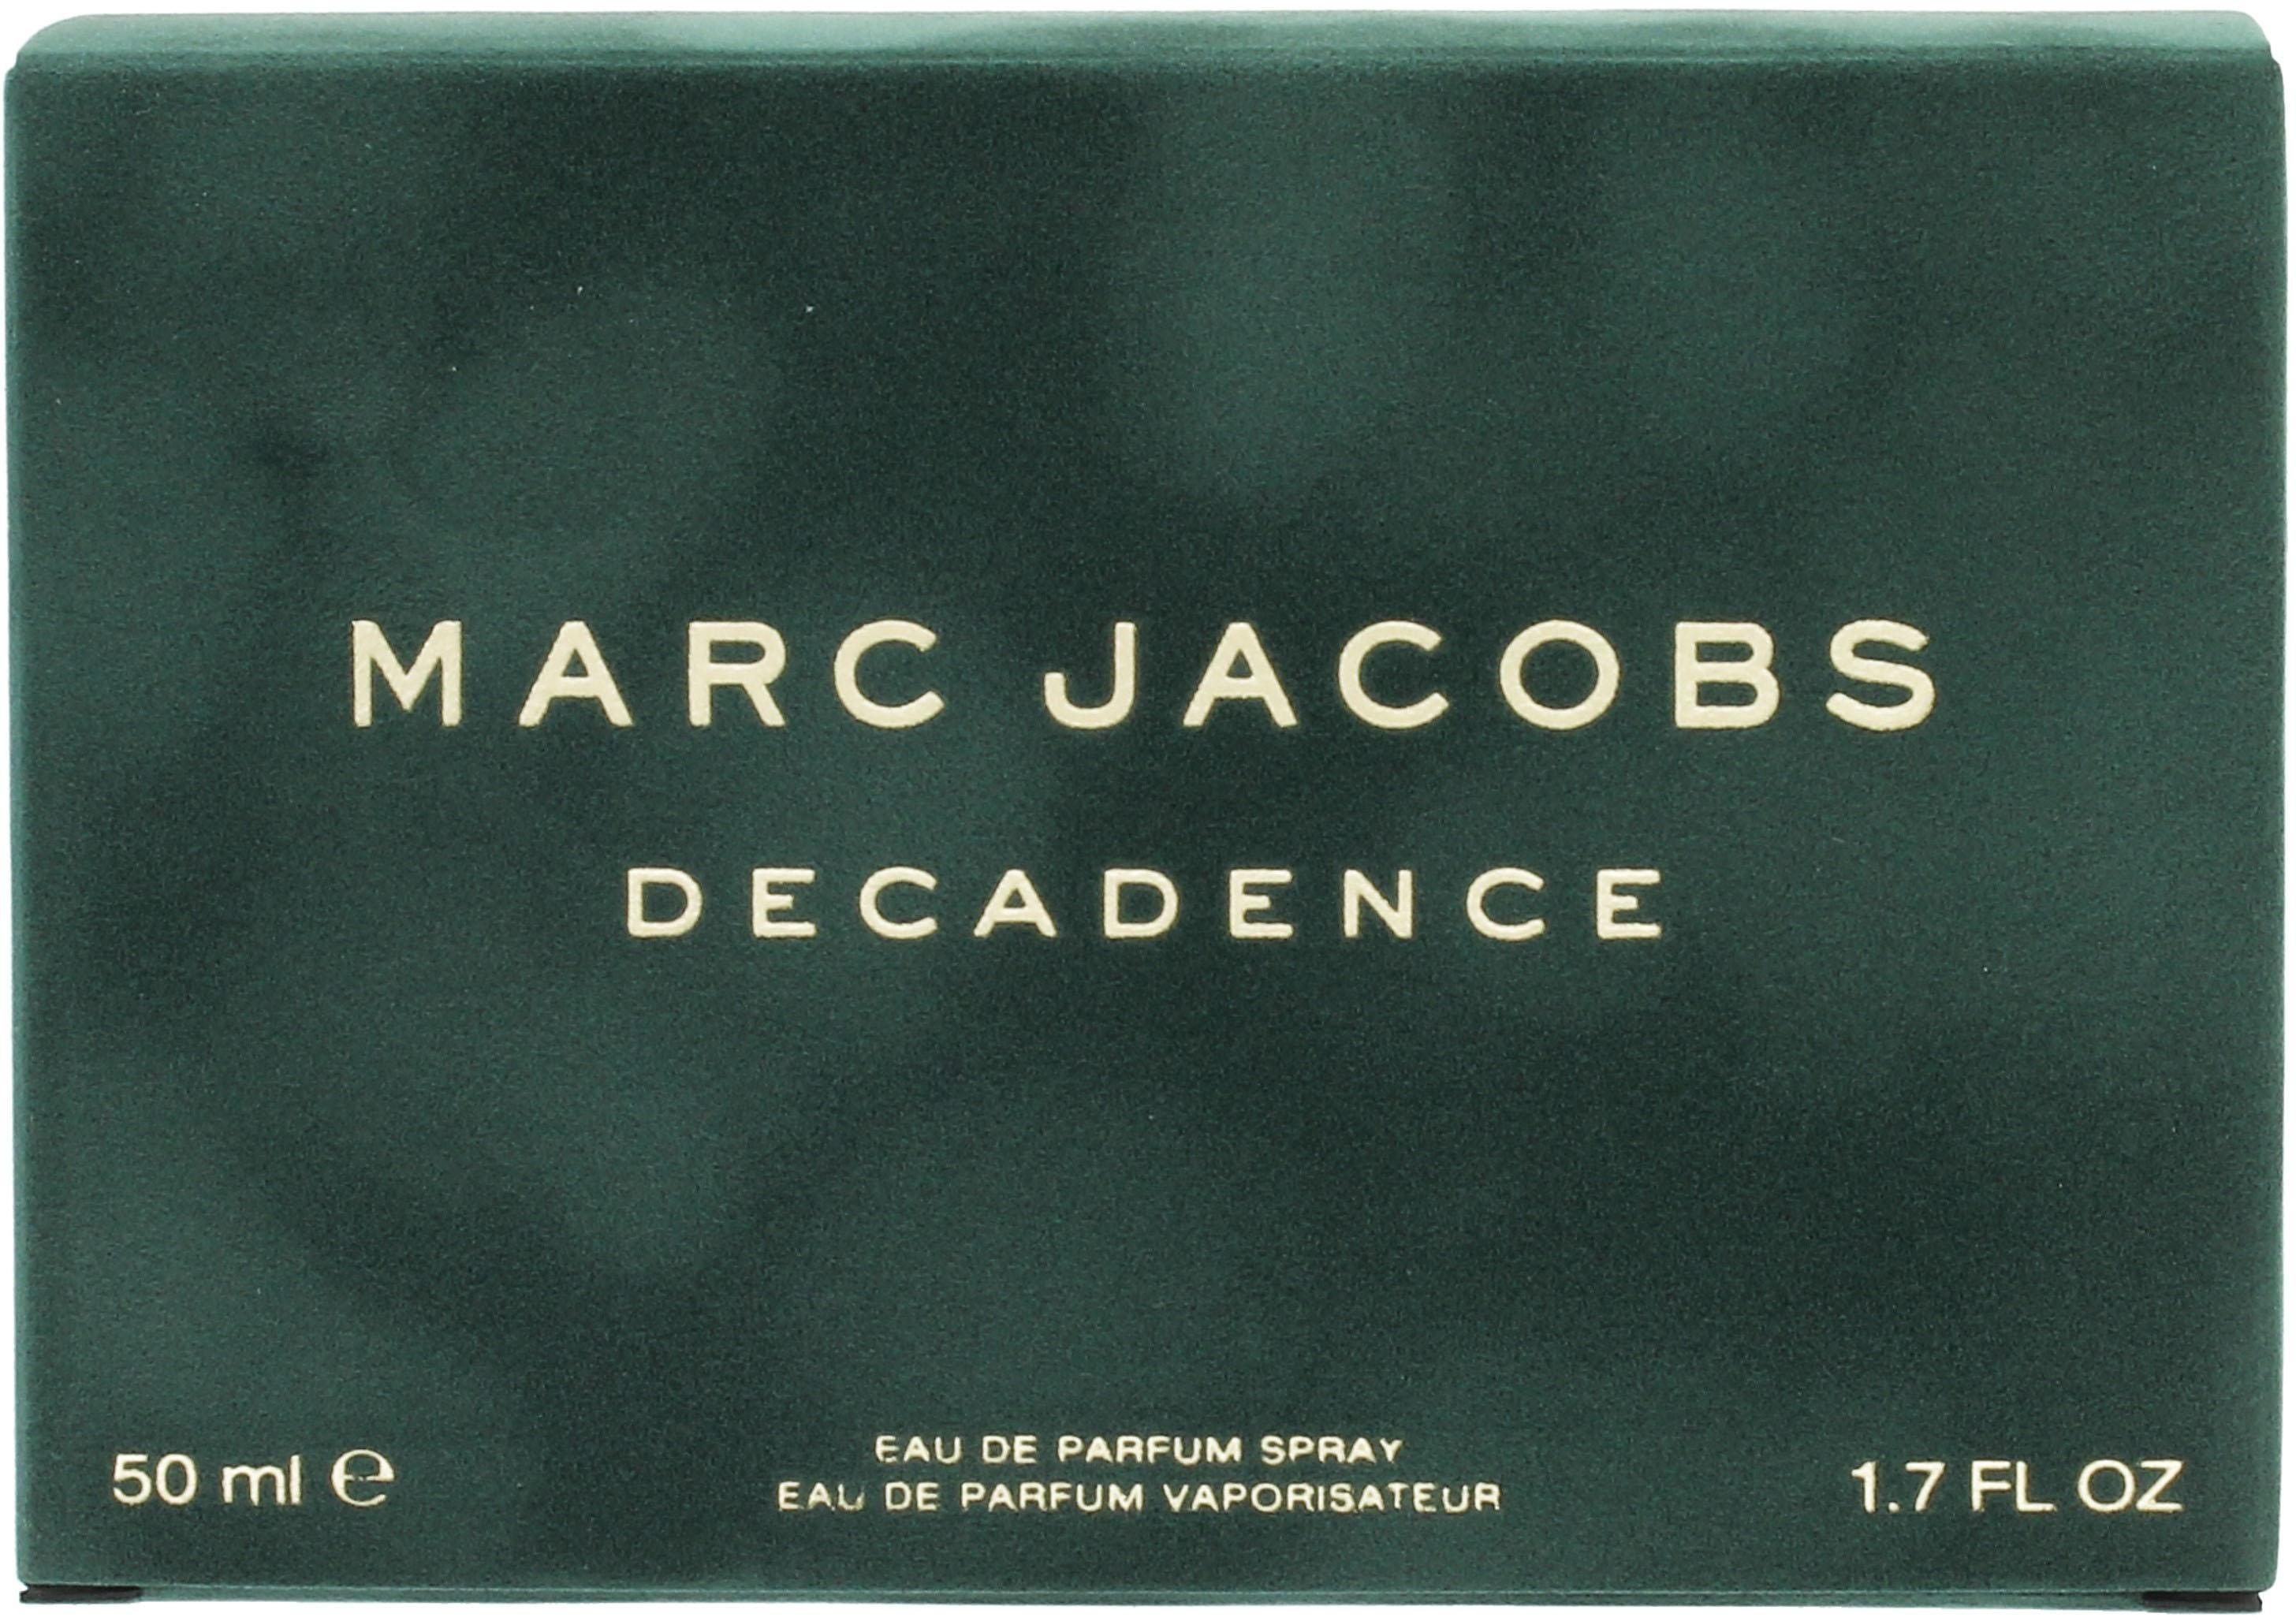 MARC de Eau Parfum JACOBS Decadence